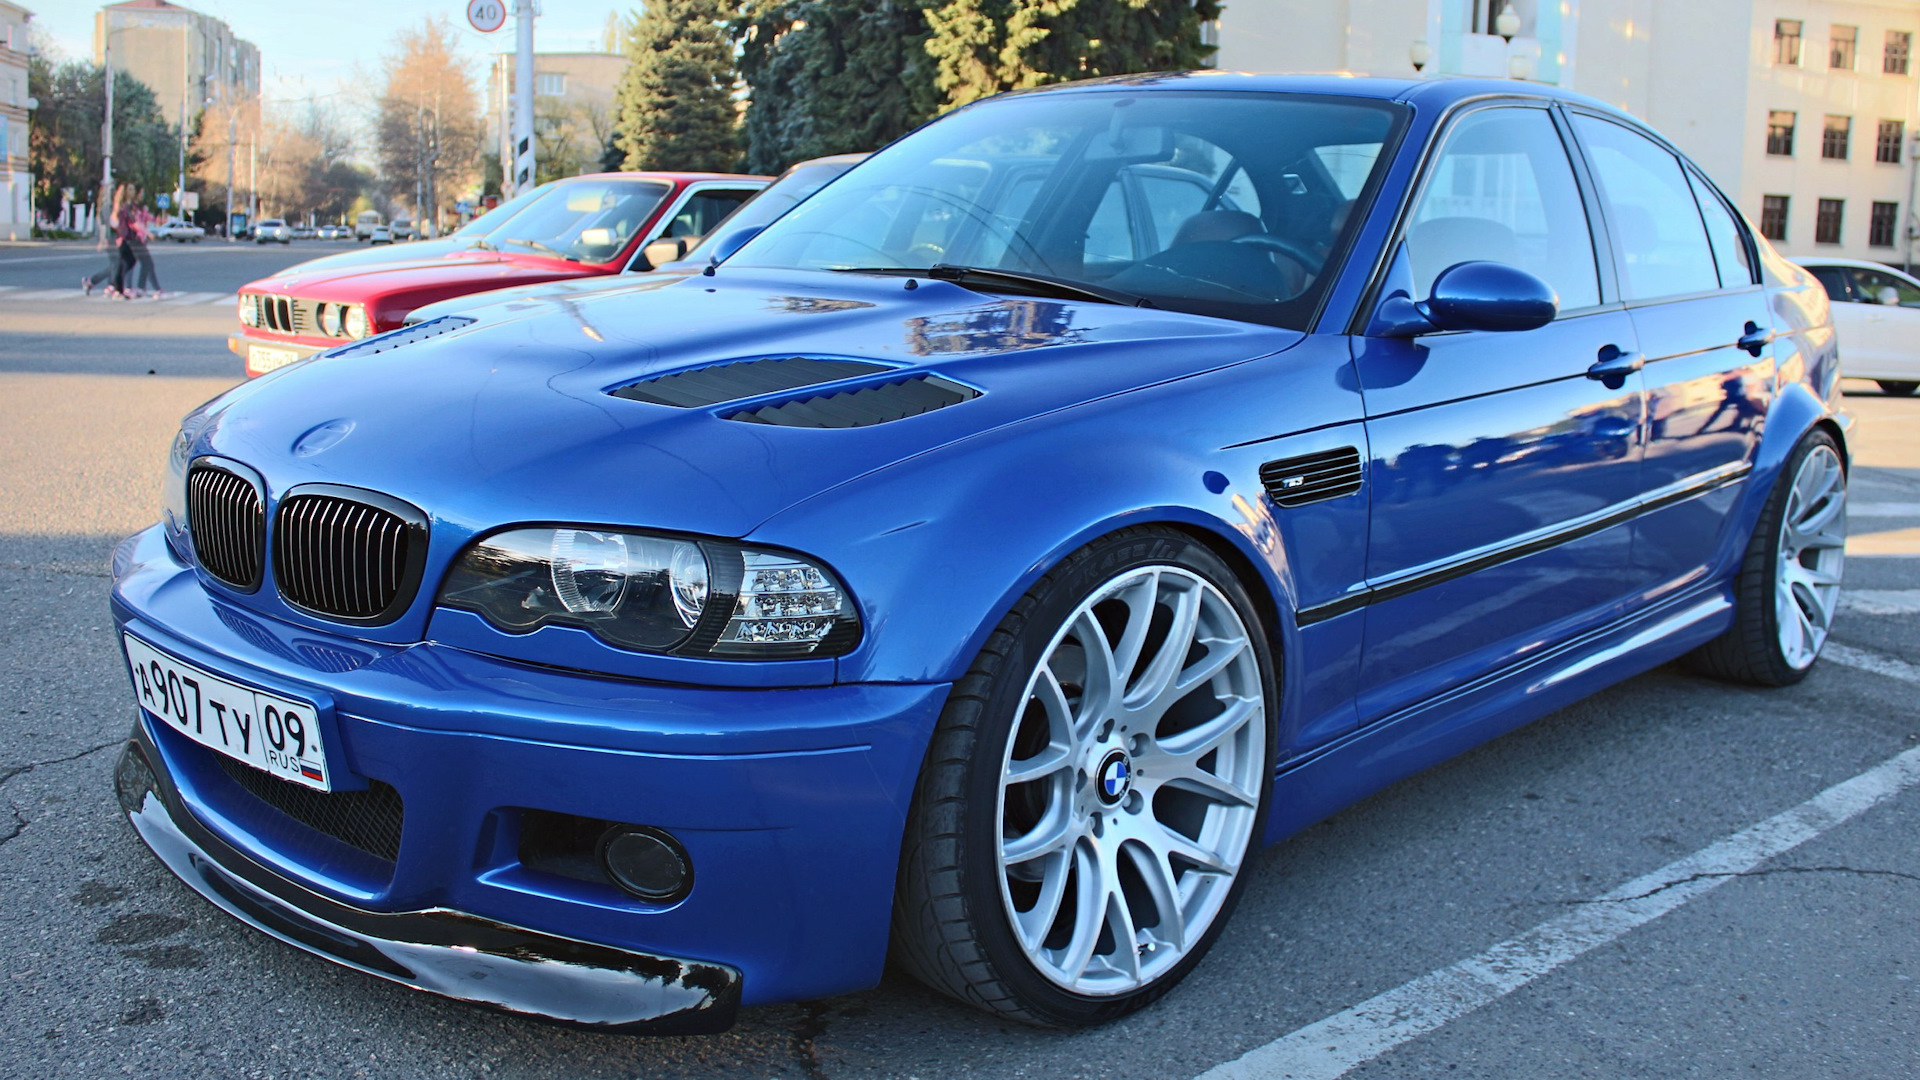 2.2 е46. БМВ м3 е46 седан. BMW e46 Coupe. БМВ е46 седан синяя. BMW m3 e46 sedan.